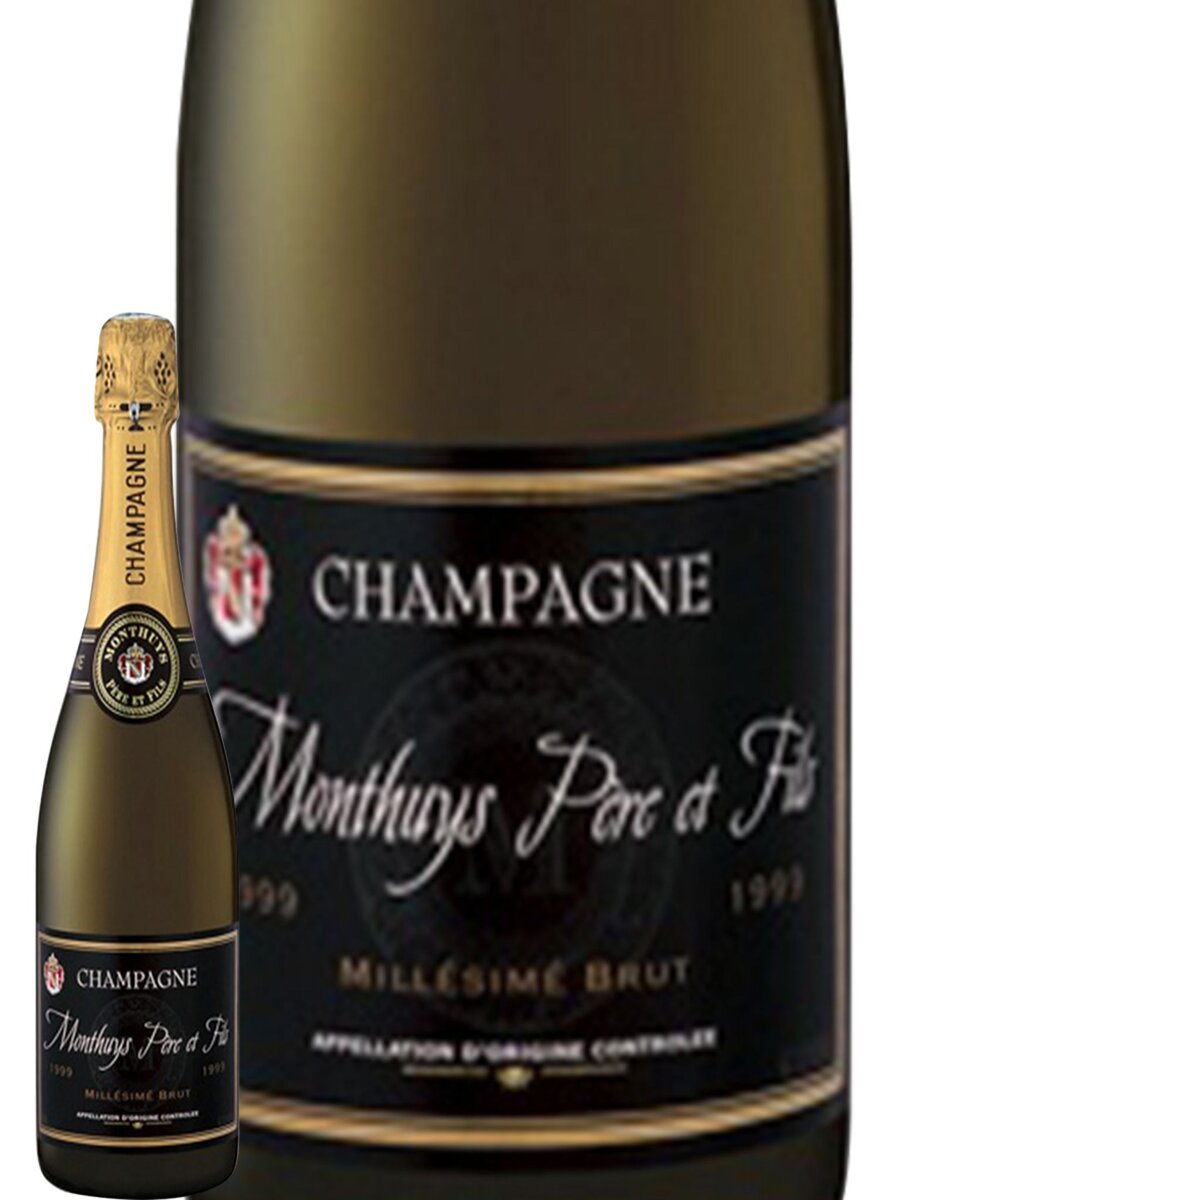 Champagne Brut Monthuys Père et Fils Millésime 2008